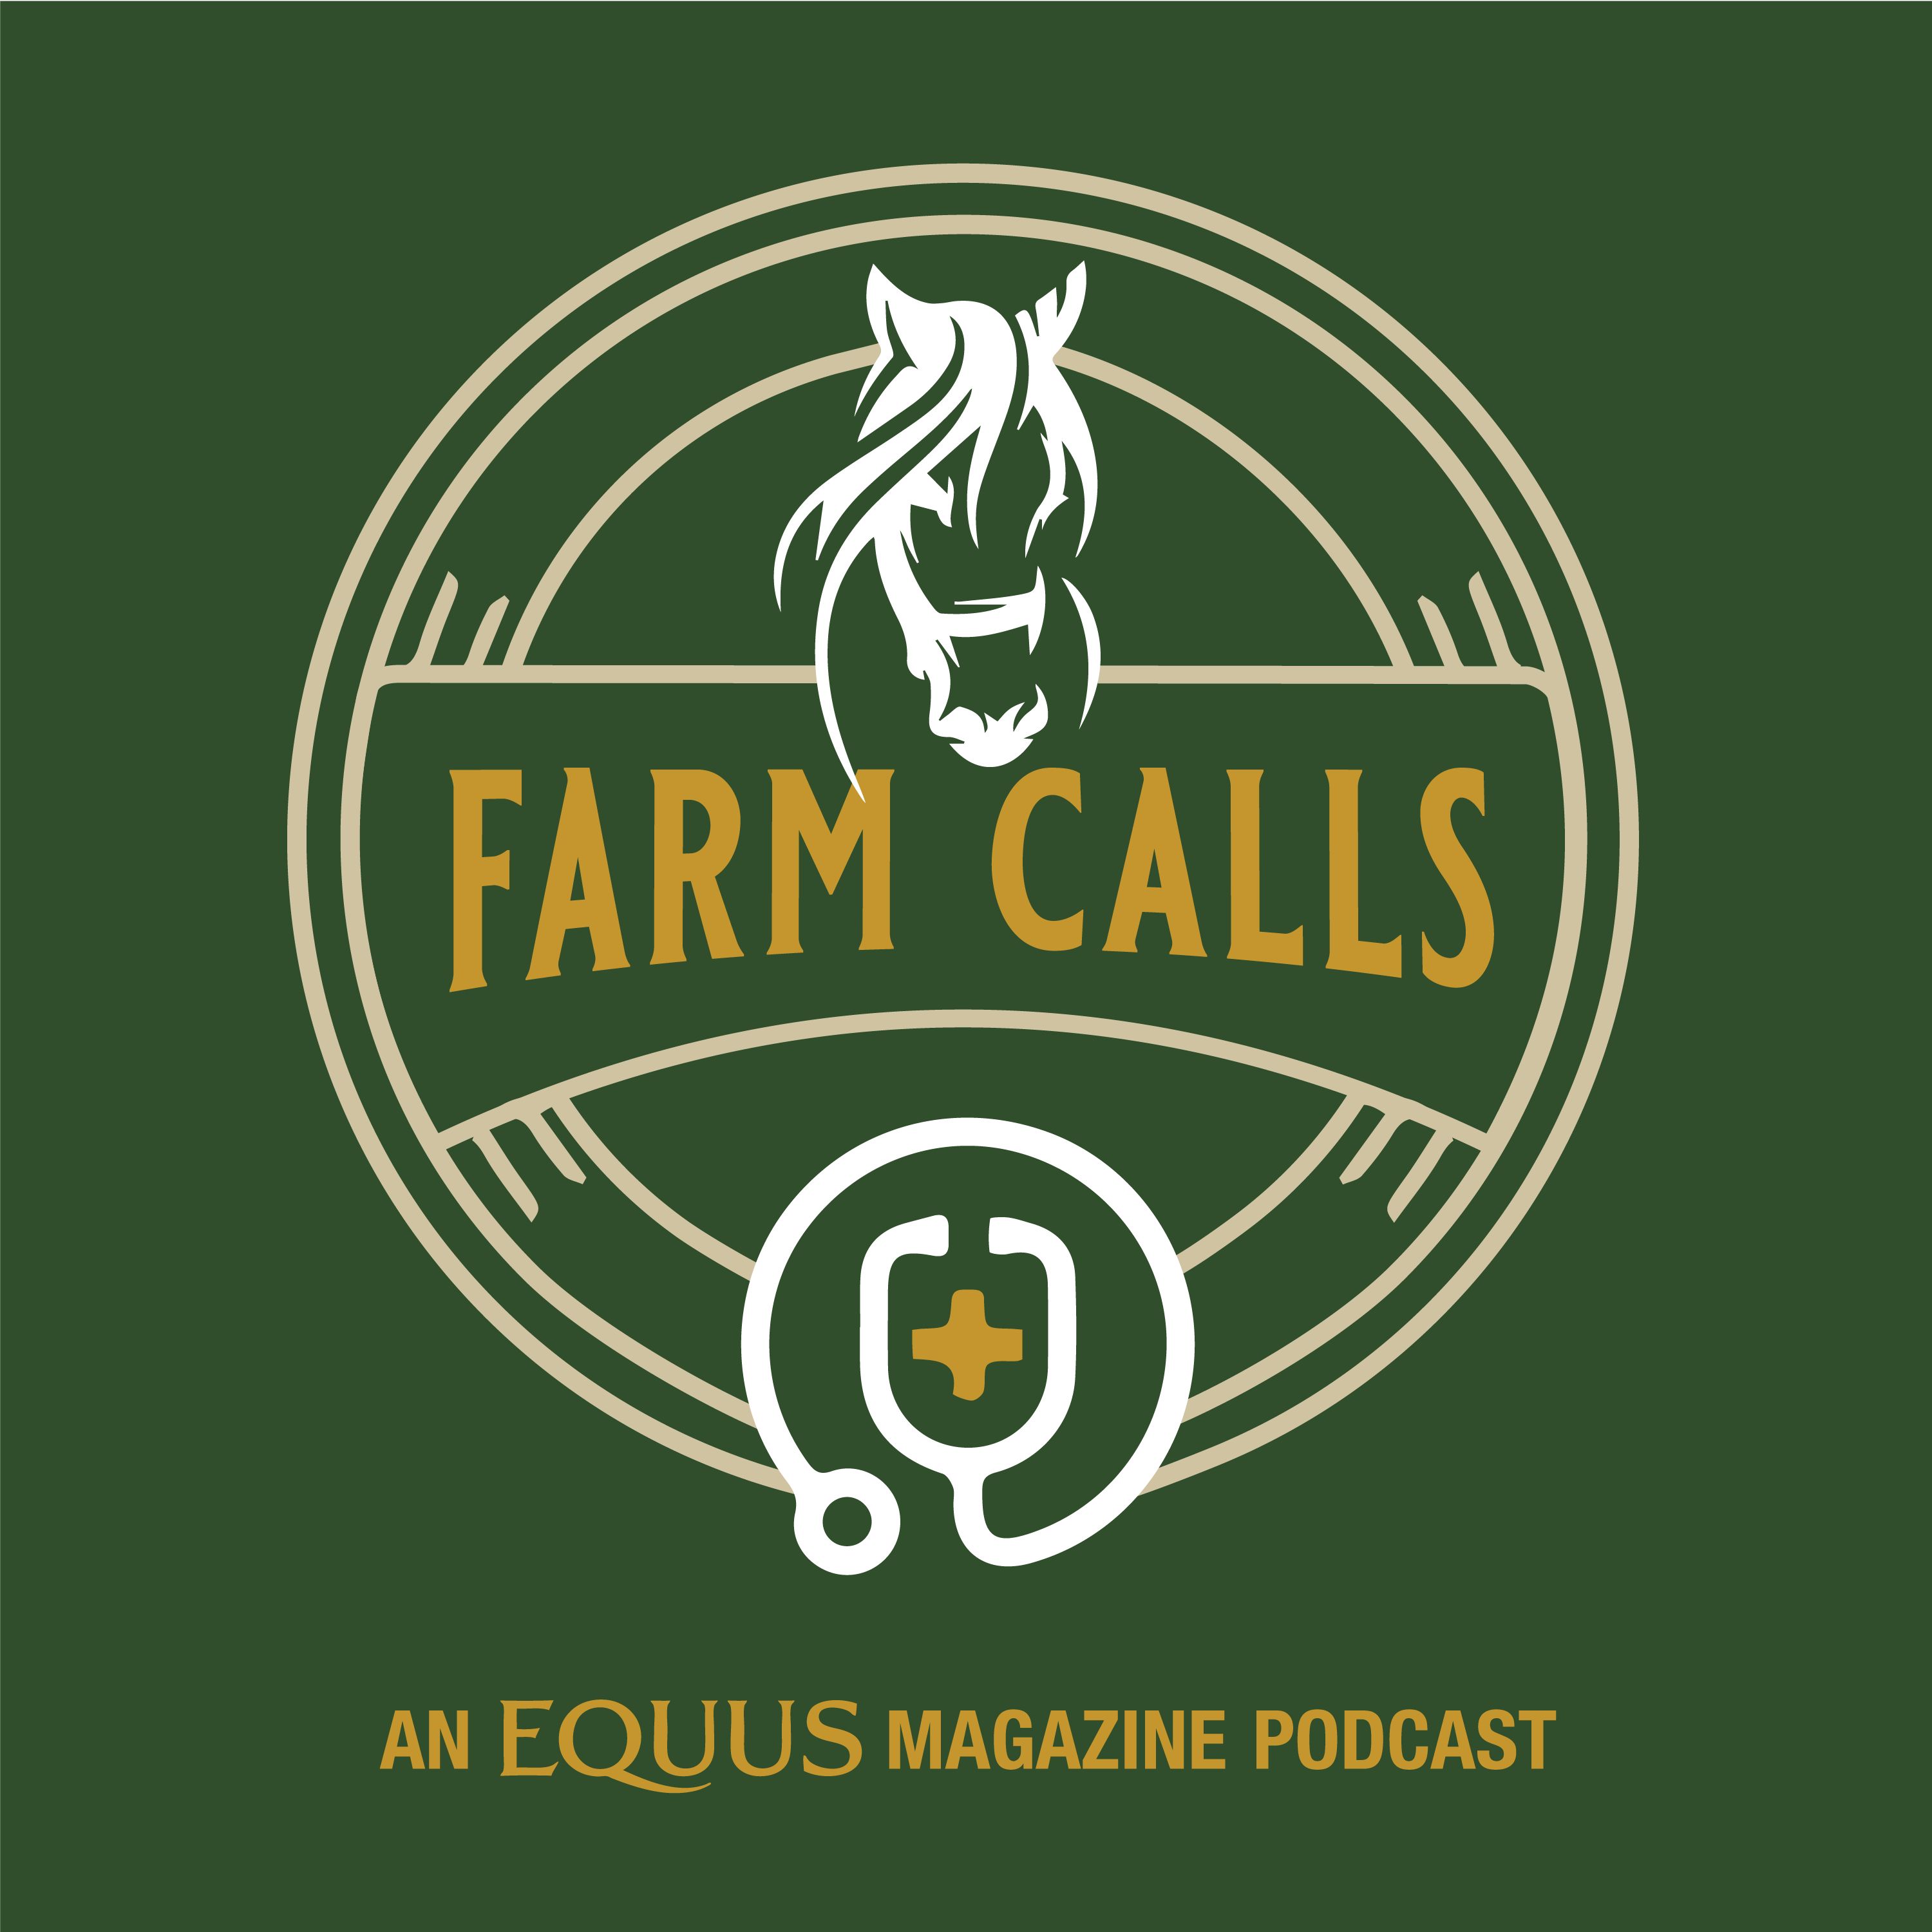 Artwork for podcast Farm Calls